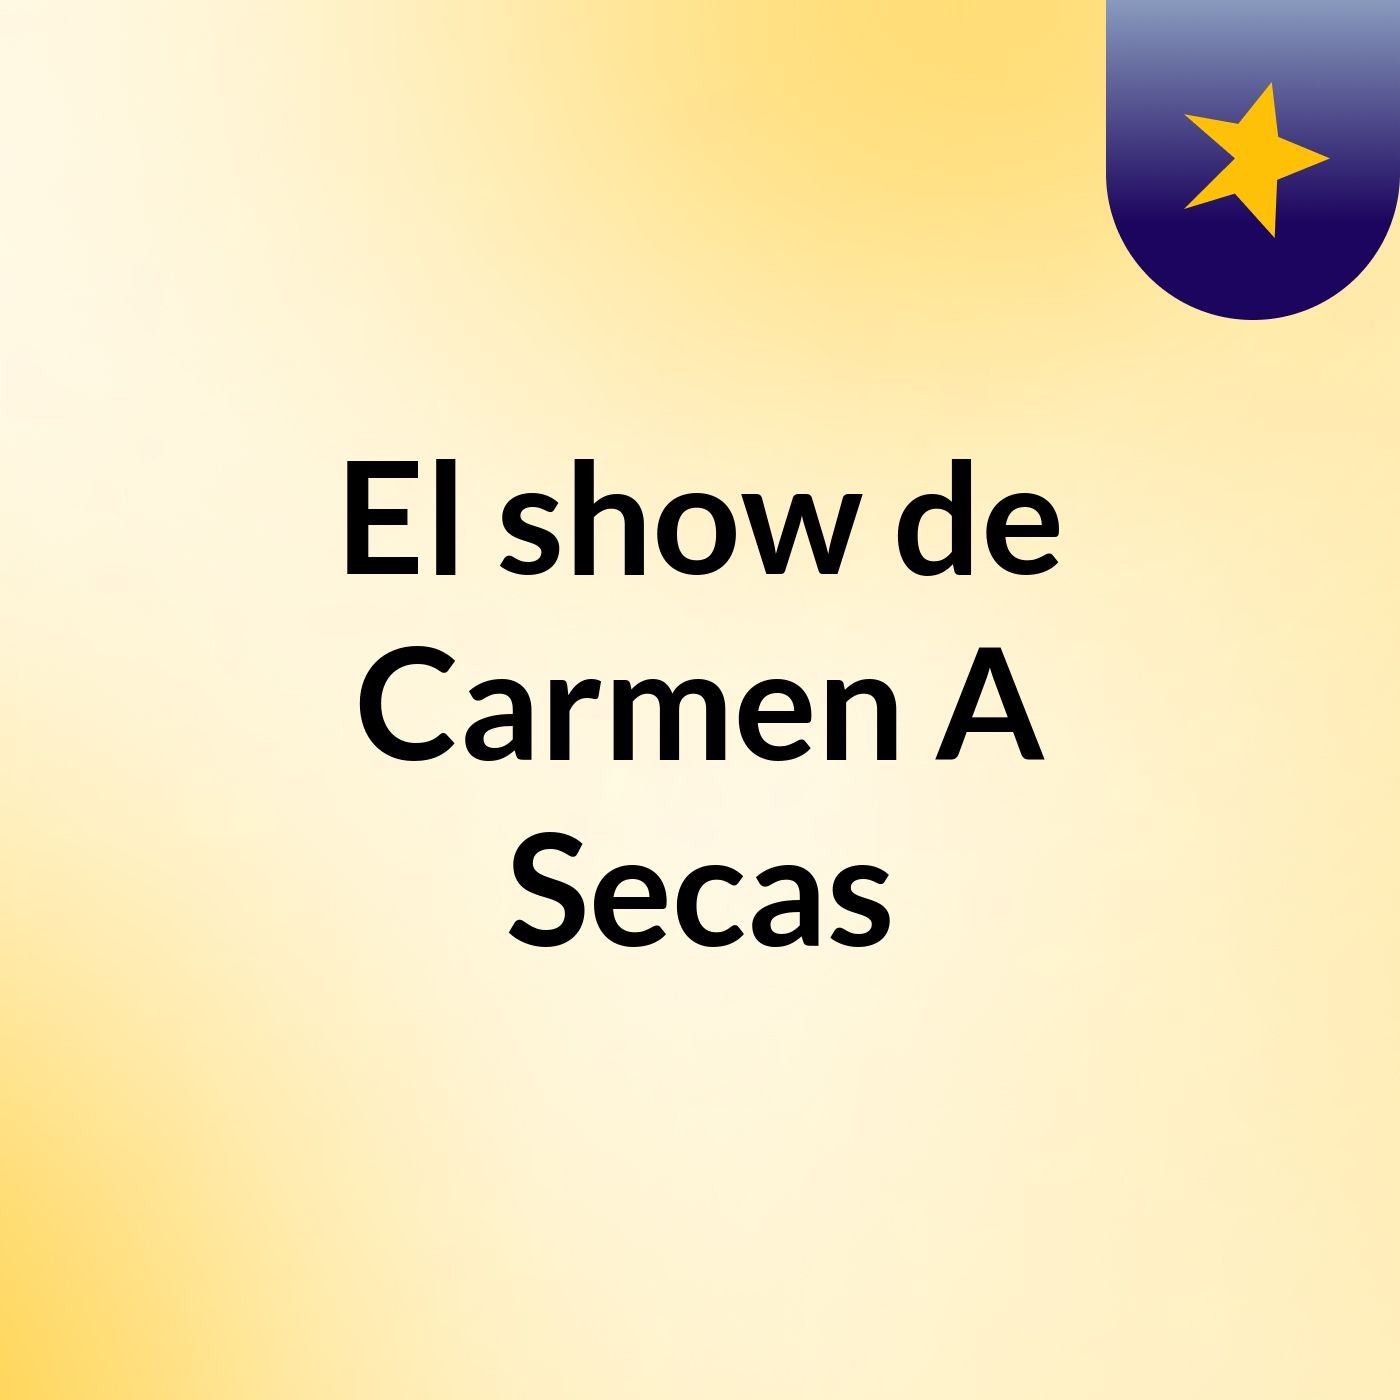 El show de Carmen A Secas